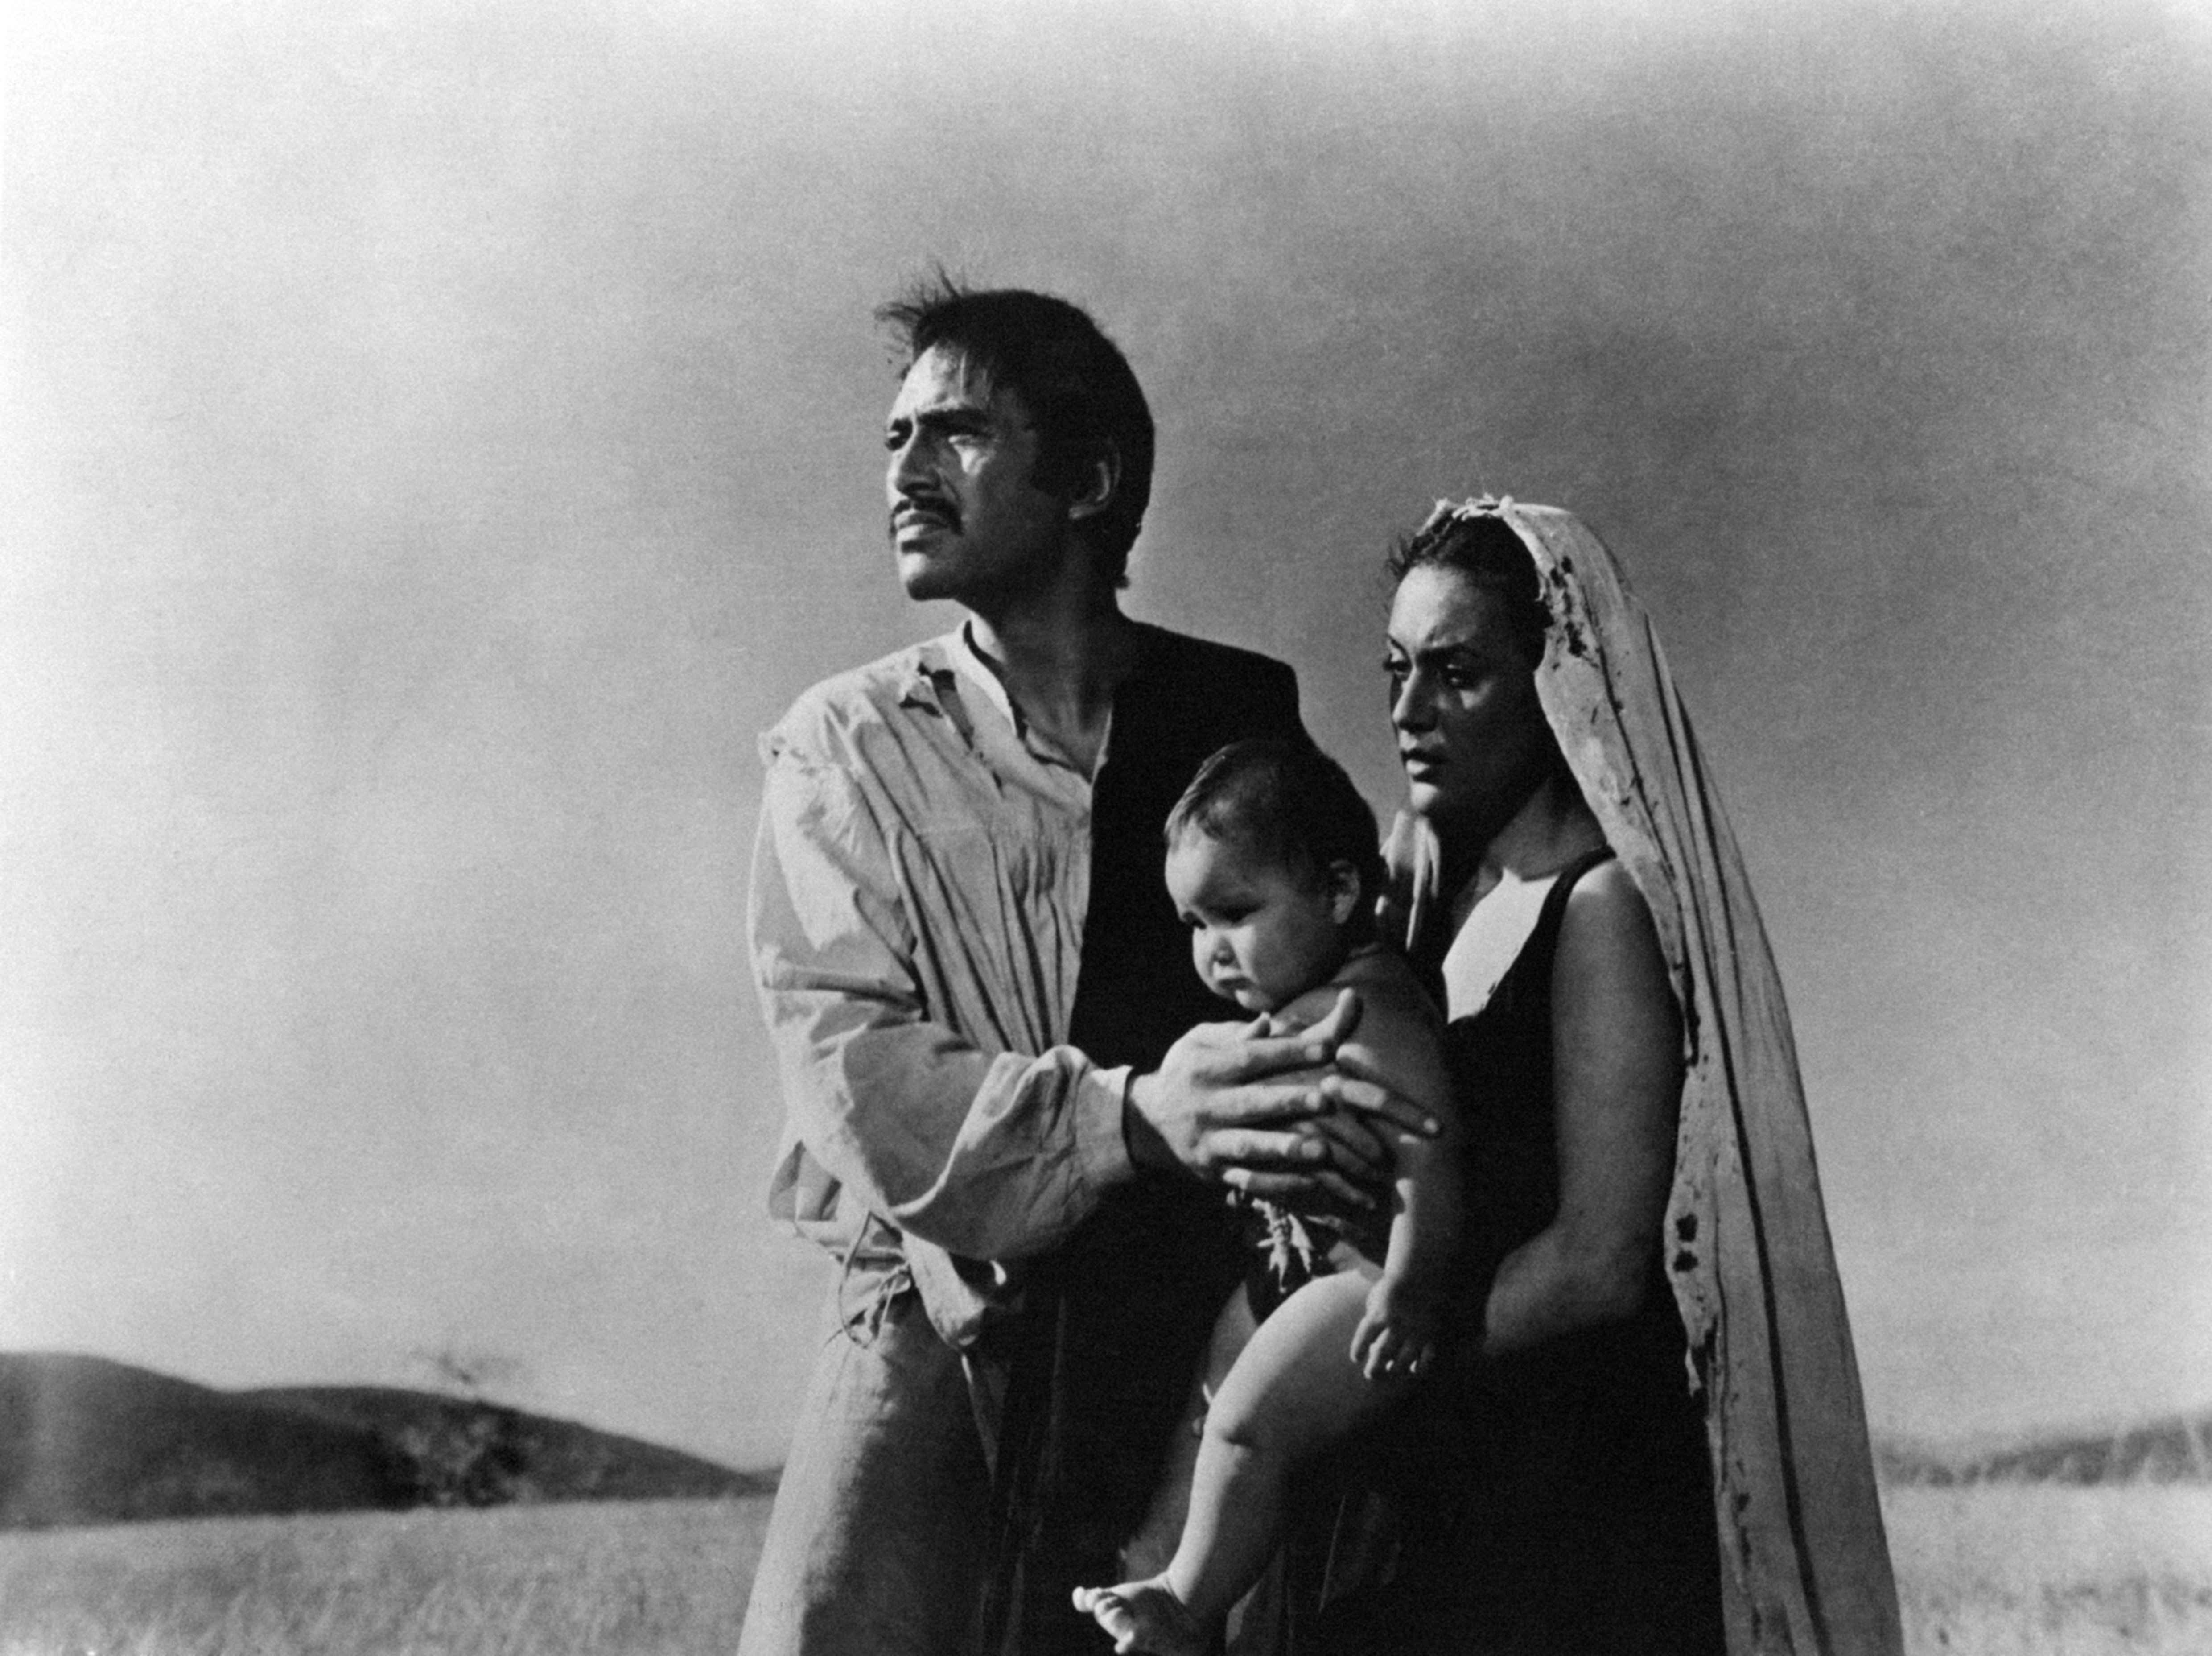 Pedro Armendáriz en escela de 'La perla' en Francia en México en 1947. | Foto: Getty Images